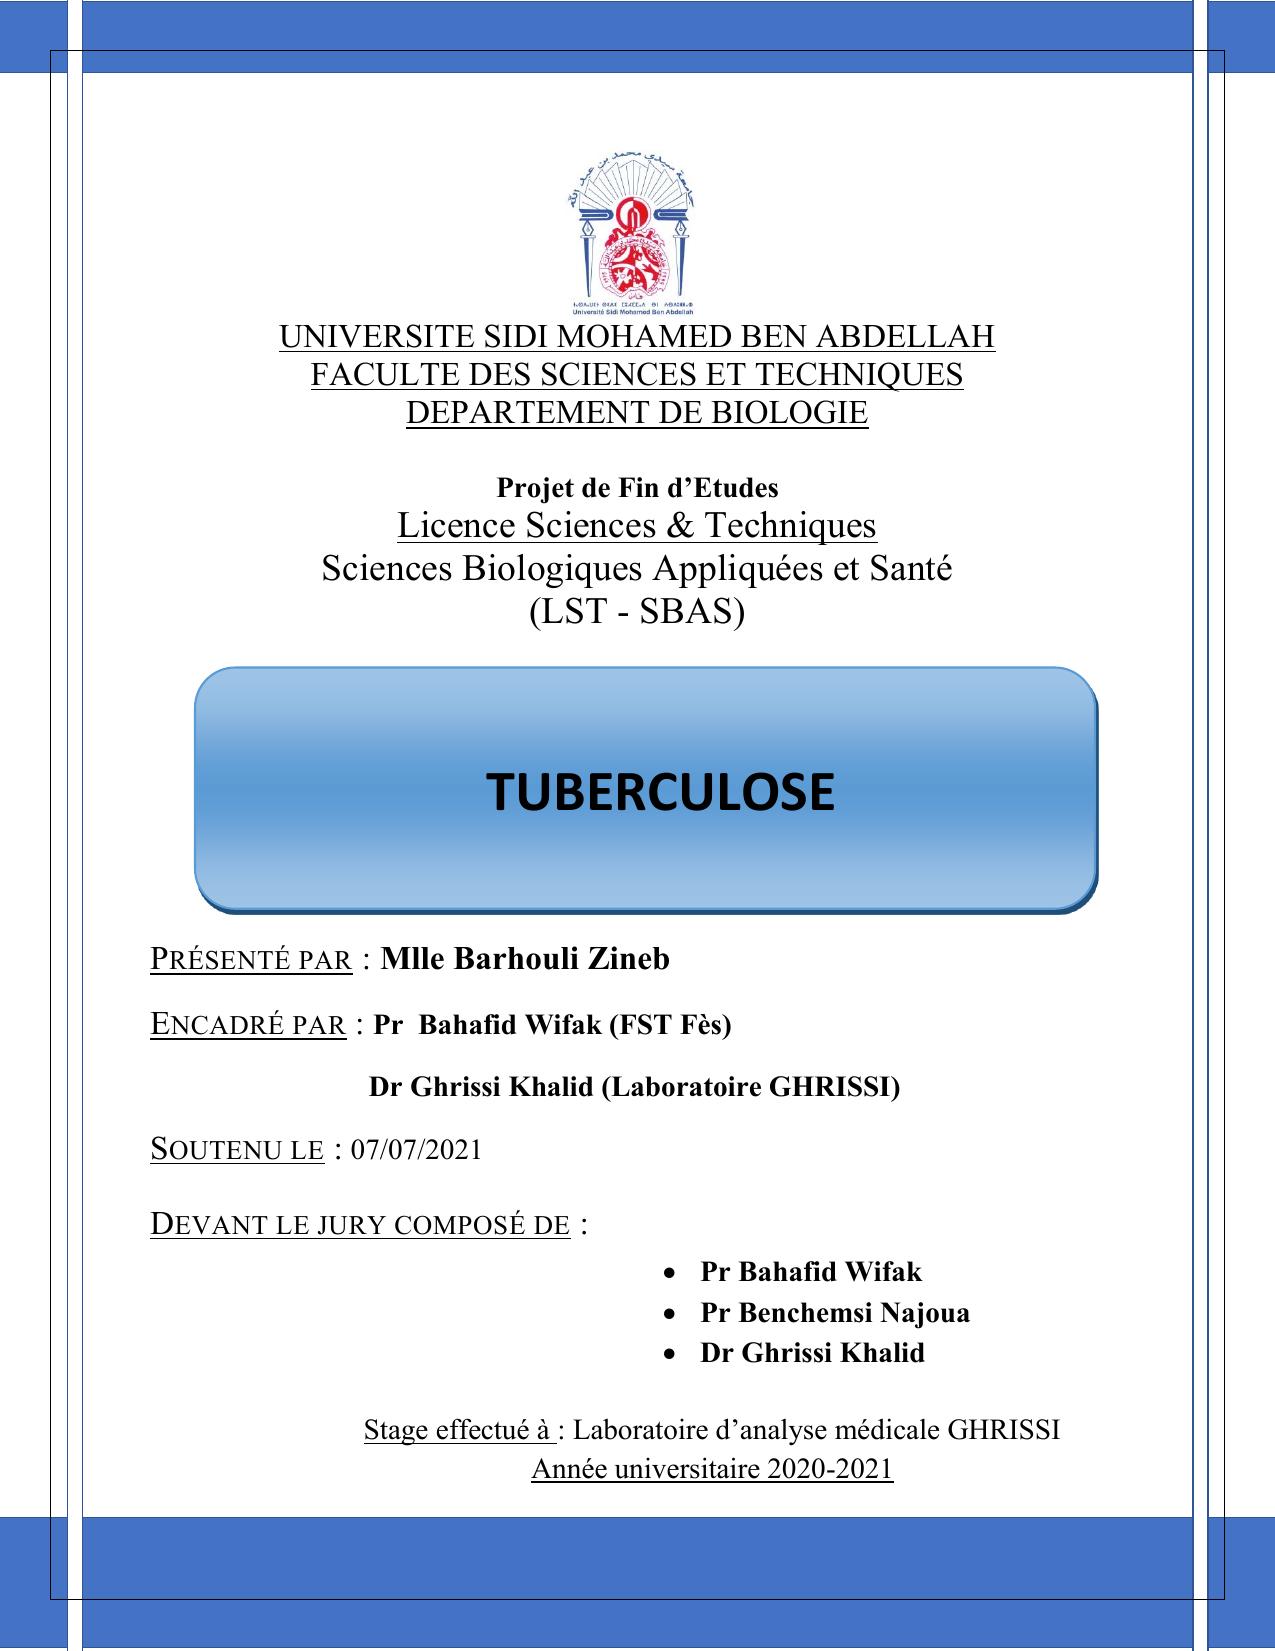 Rapport finale tuberculose